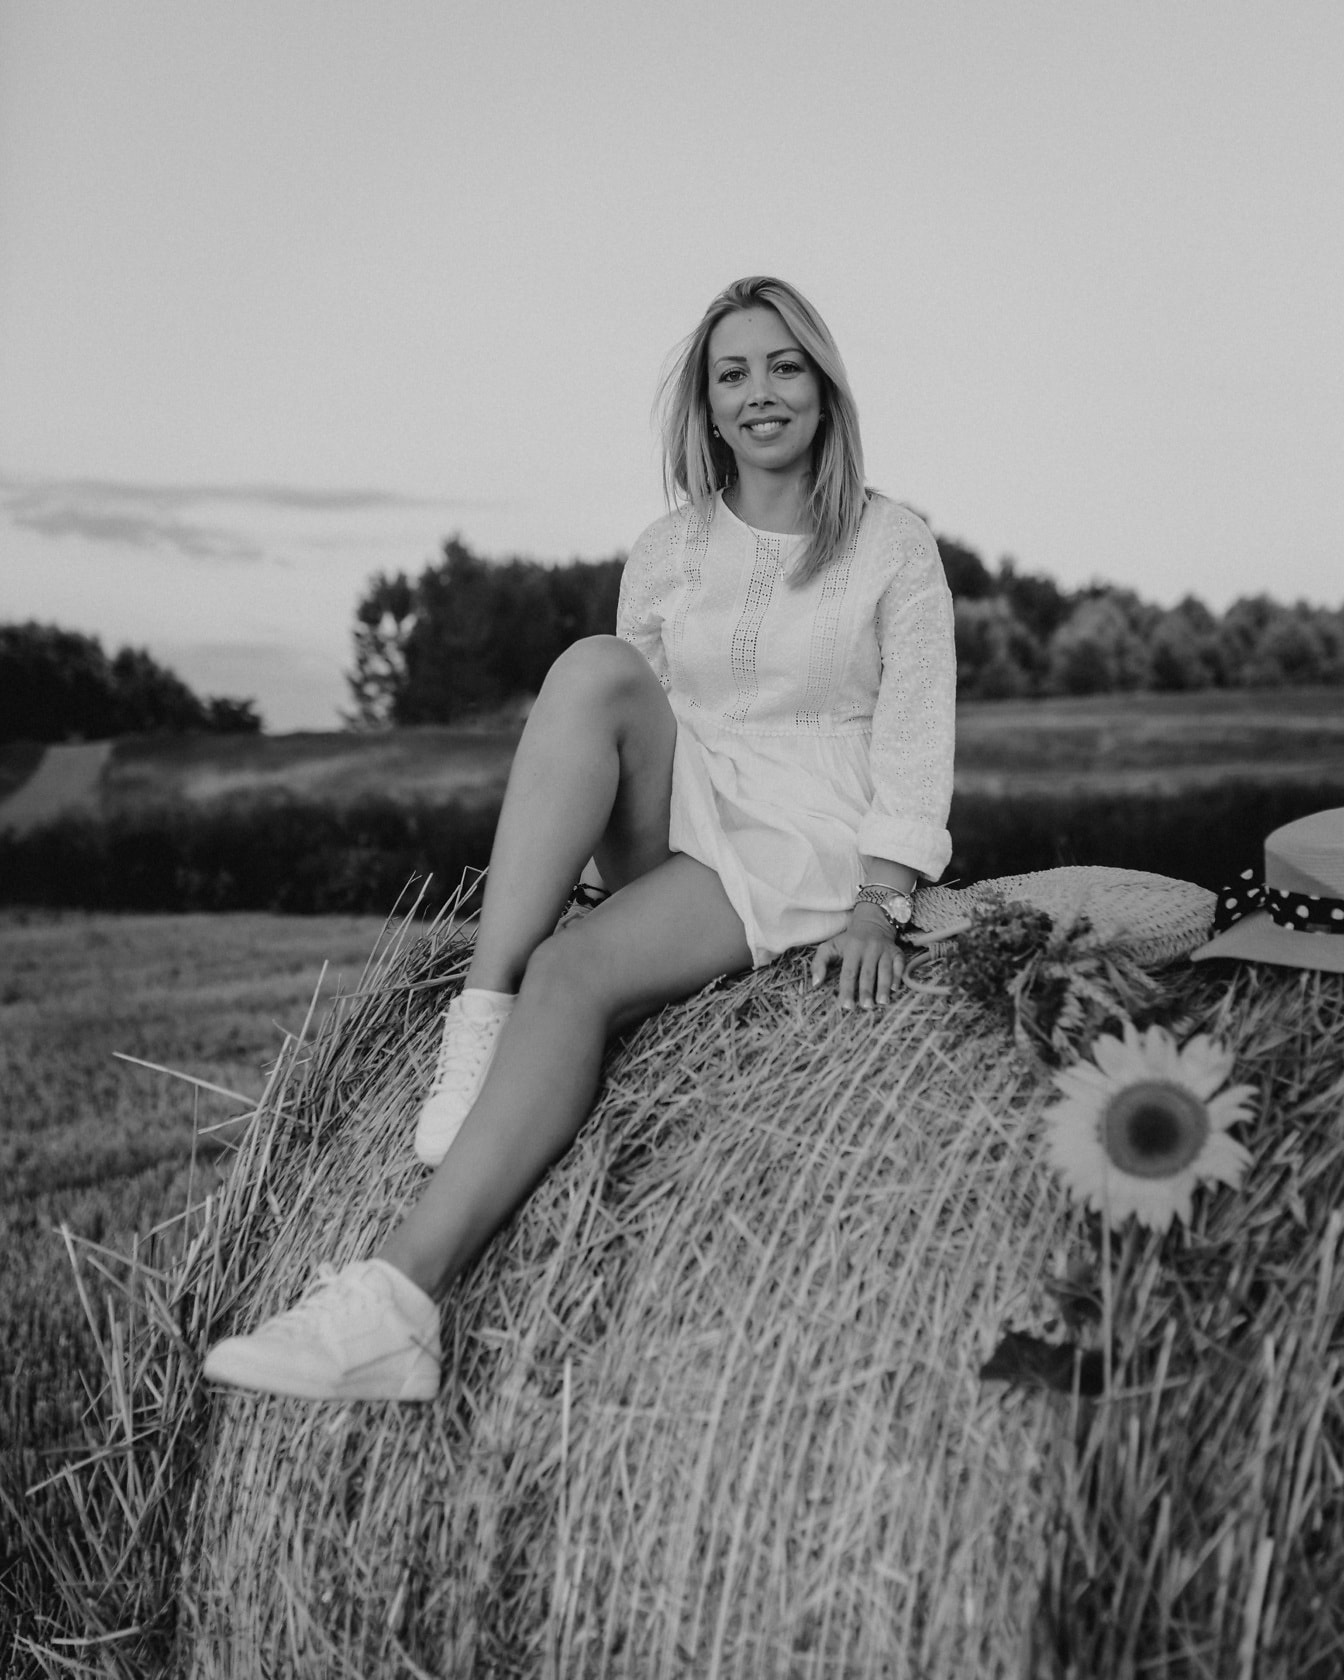 Очаровательная блондинка, сидящая на стоге сена, ролевая монохромная фотография